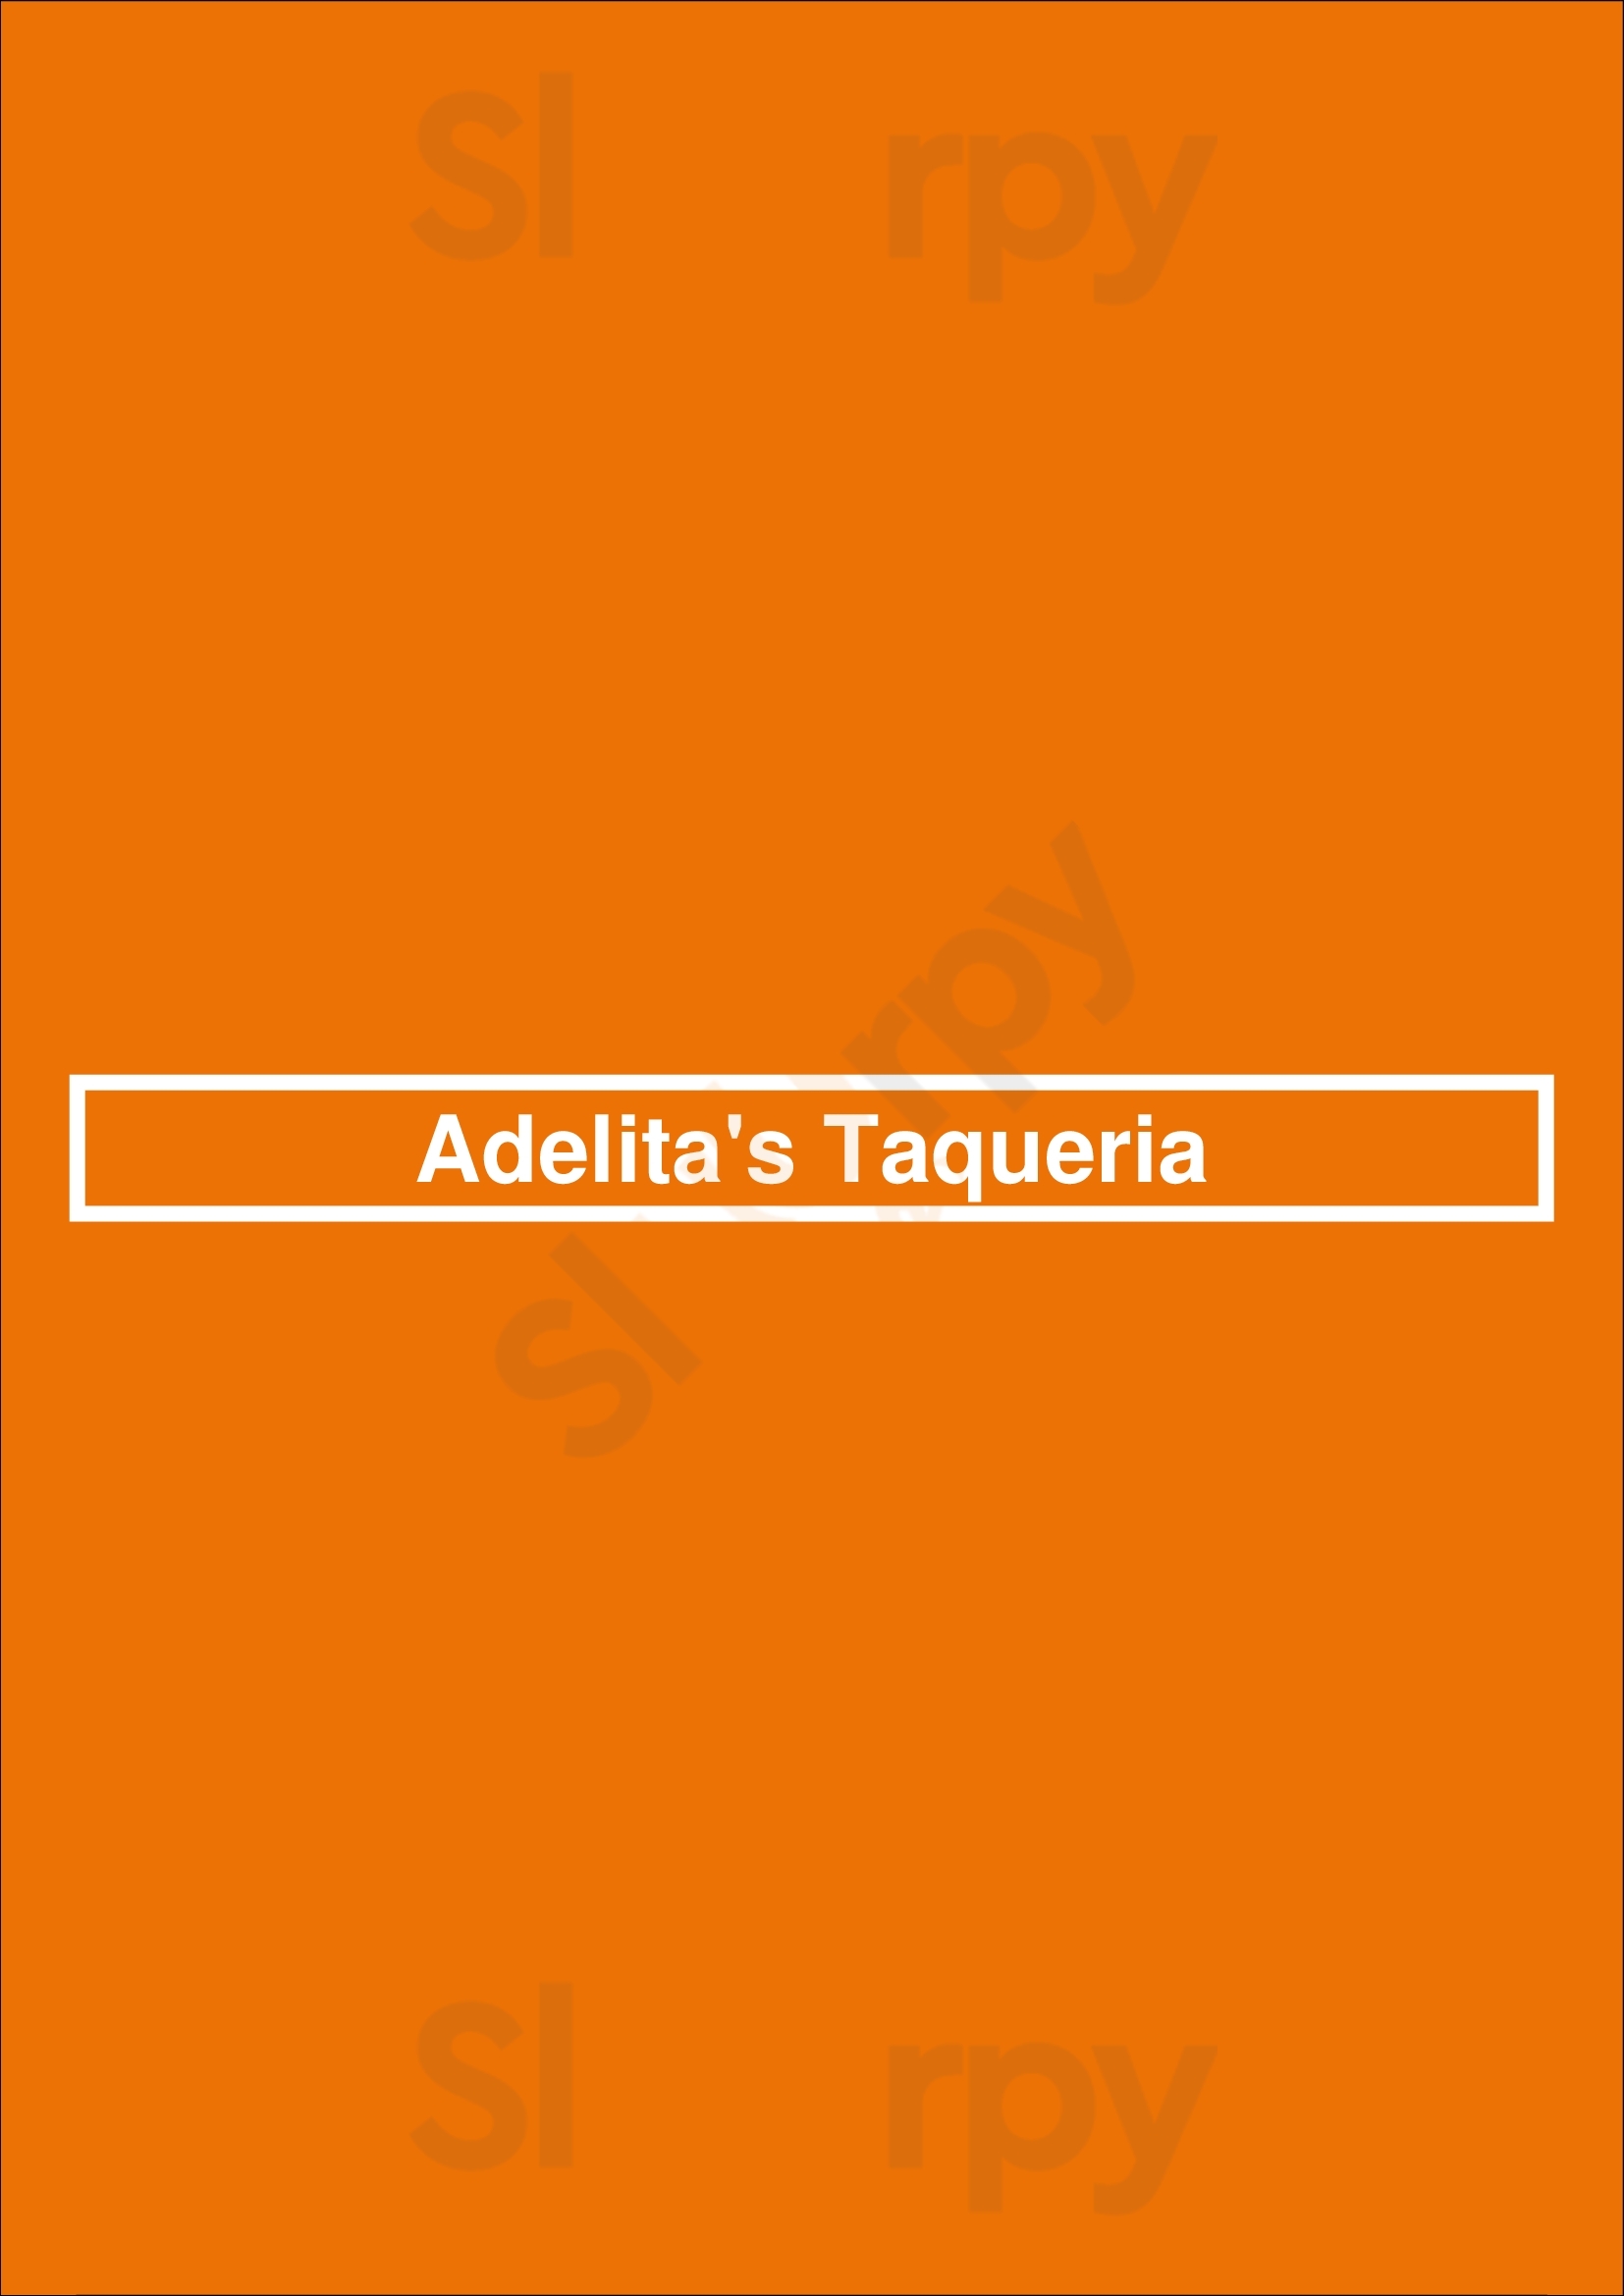 Adelita's Taqueria San Jose Menu - 1